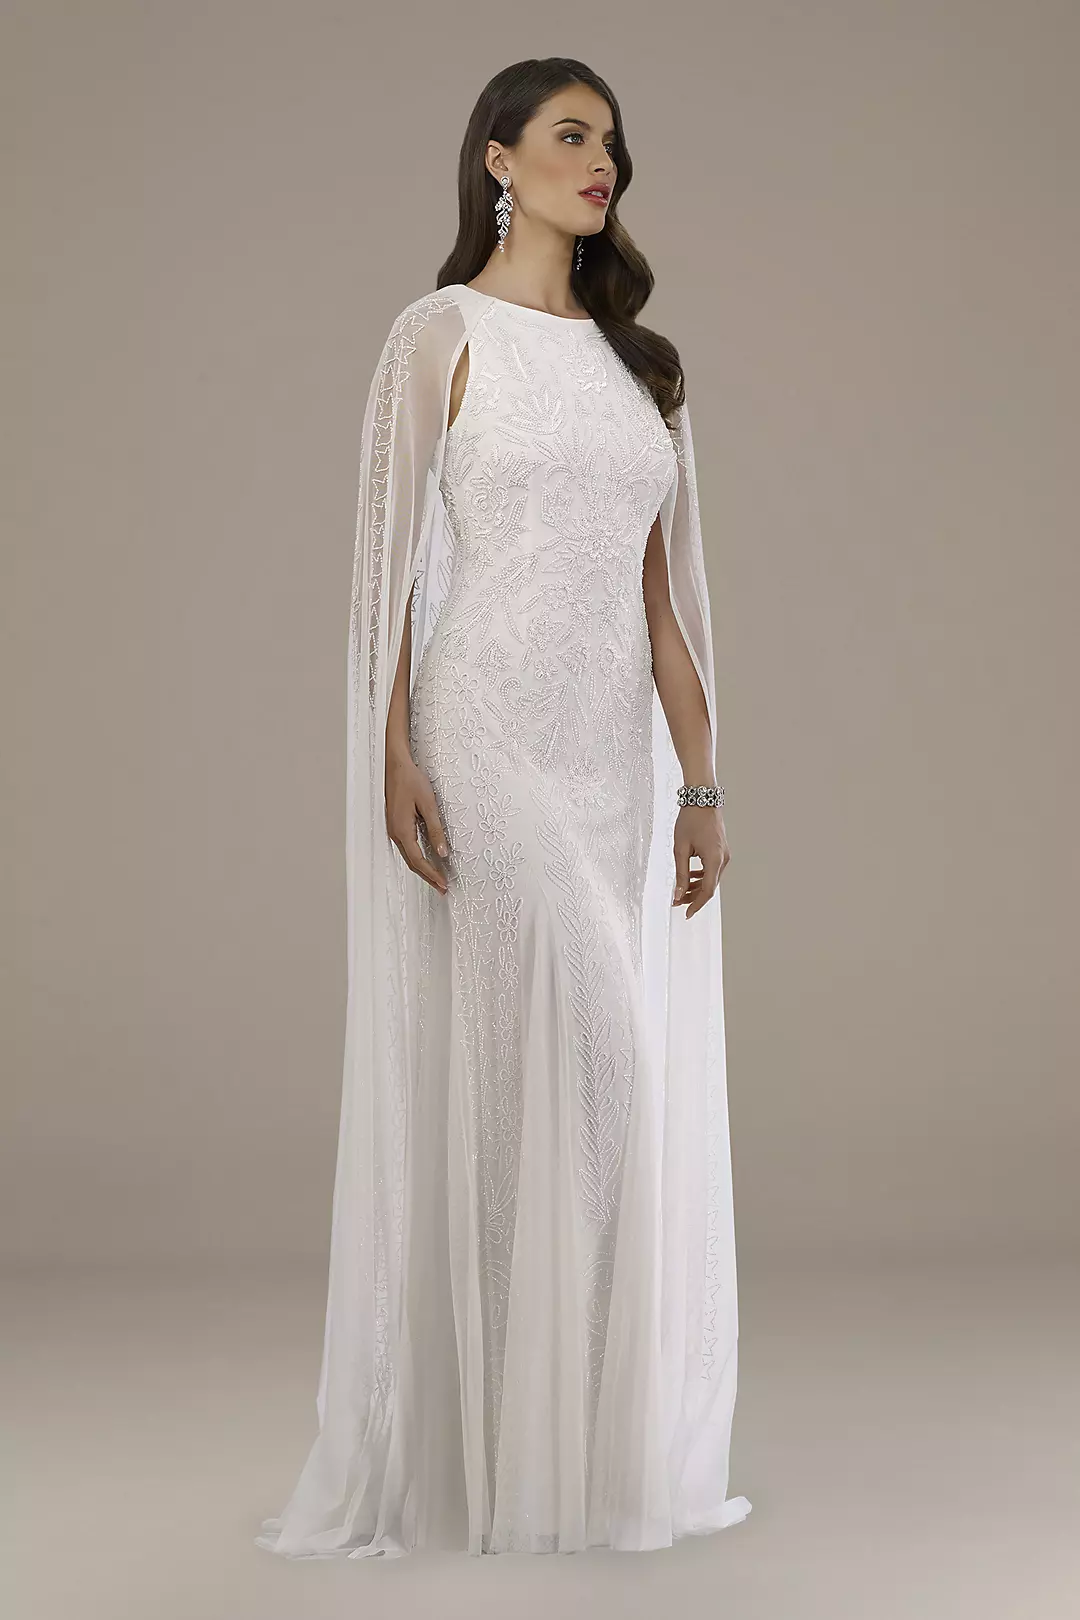 Lara Eve Beaded Cape Wedding Dress Image